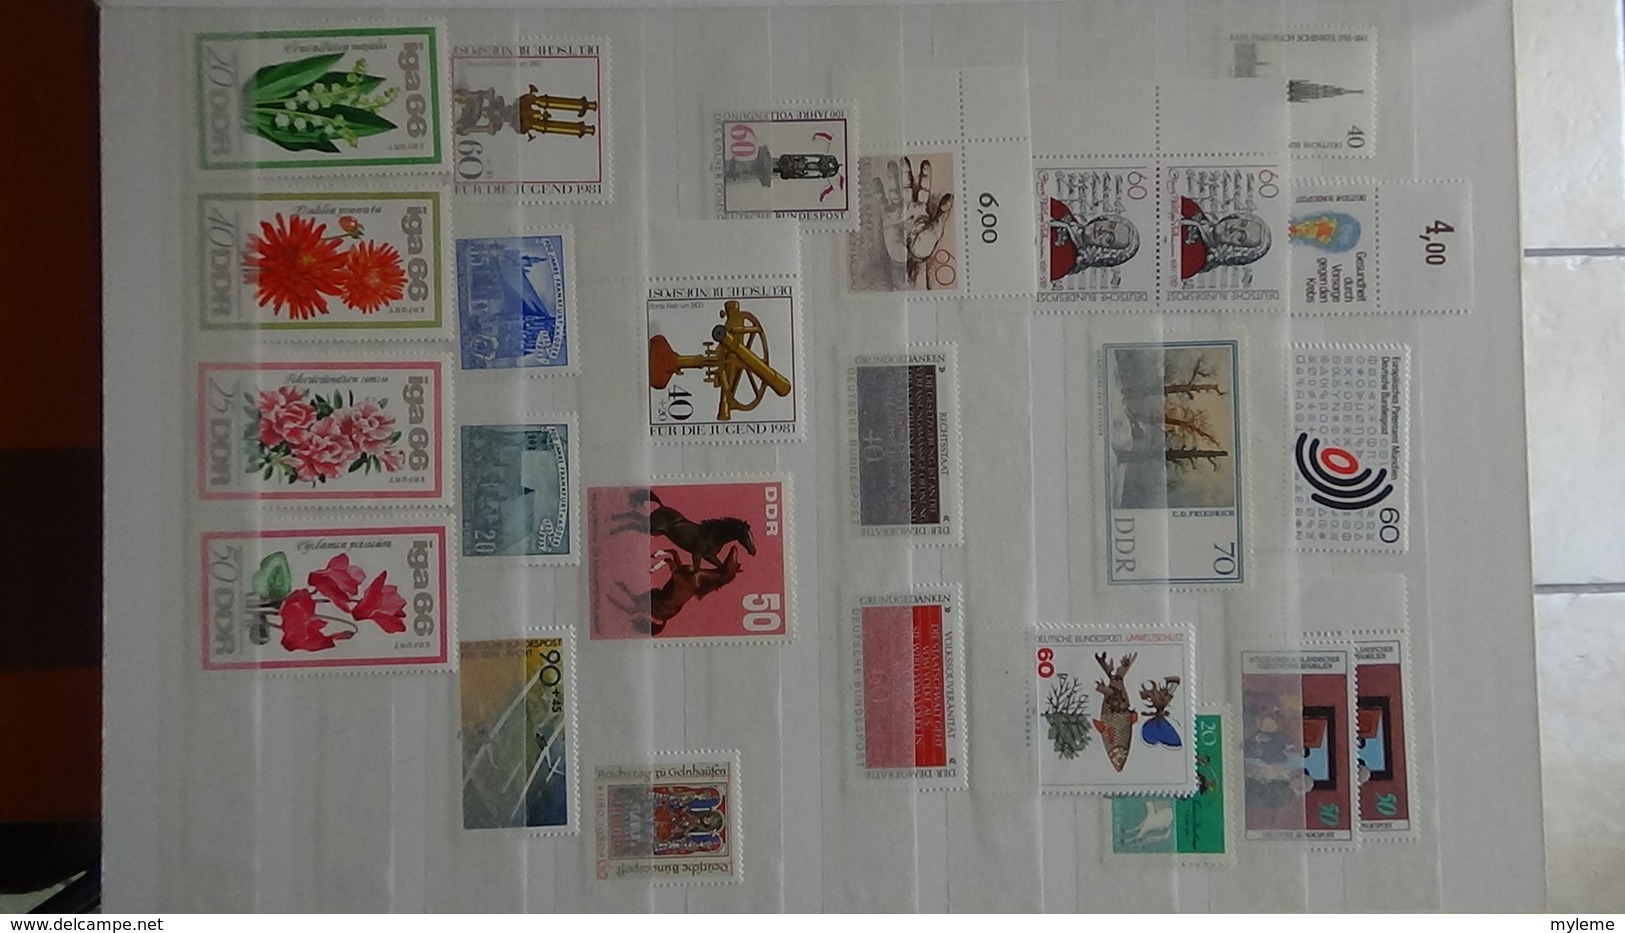 B376 Collection timbres et blocs ** d'Allemagne. A saisir !!!